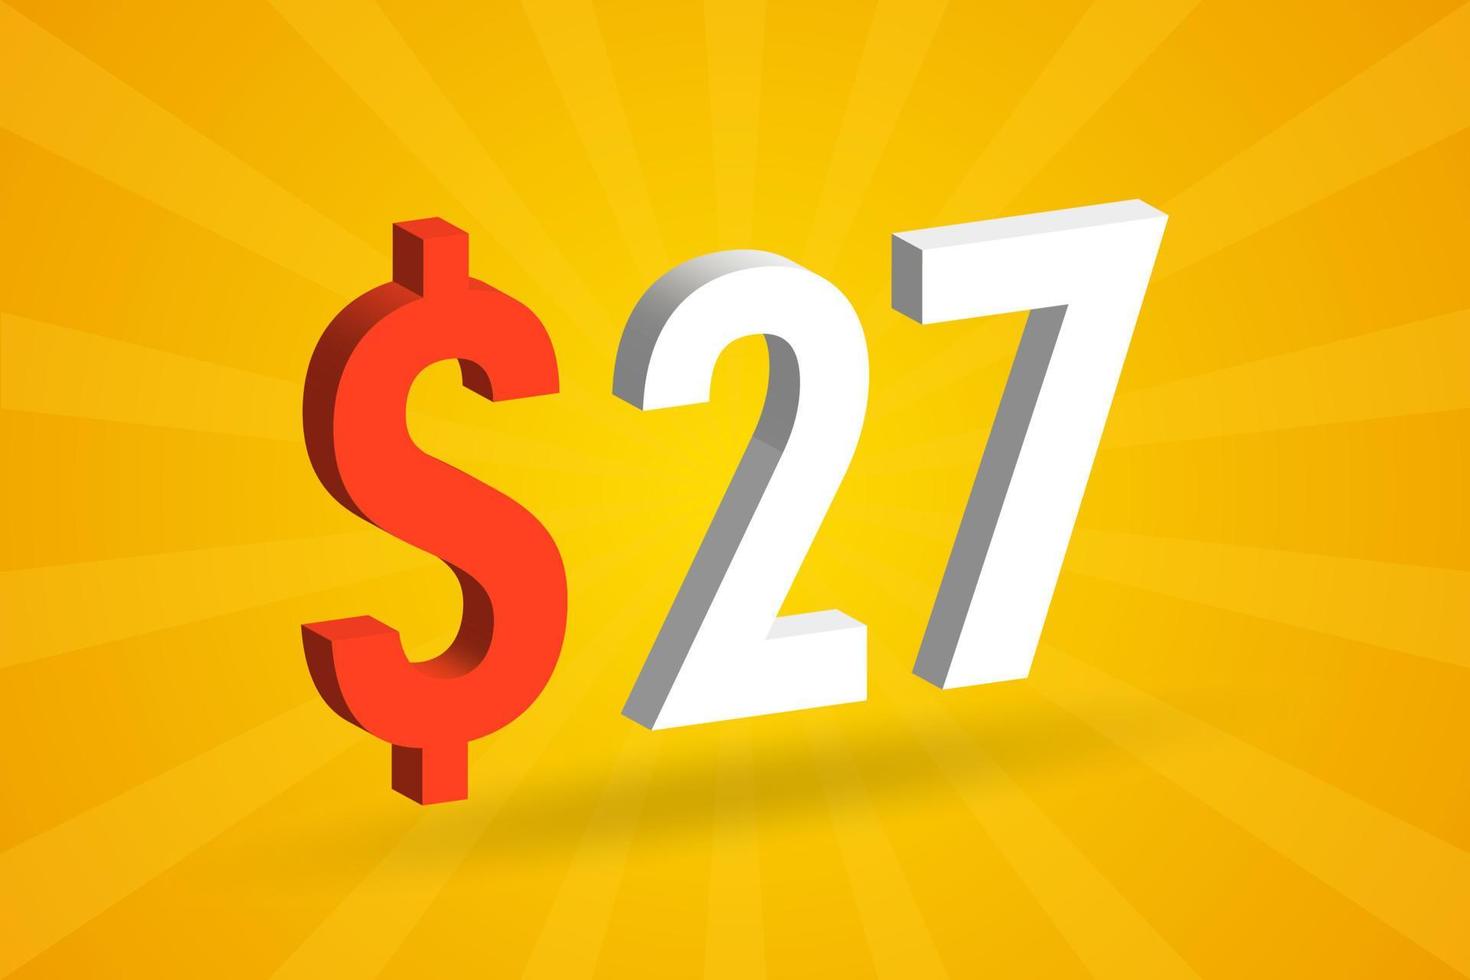 27 usd símbolo de texto 3d. 27 dólares de los estados unidos 3d con fondo amarillo vector de stock de dinero americano